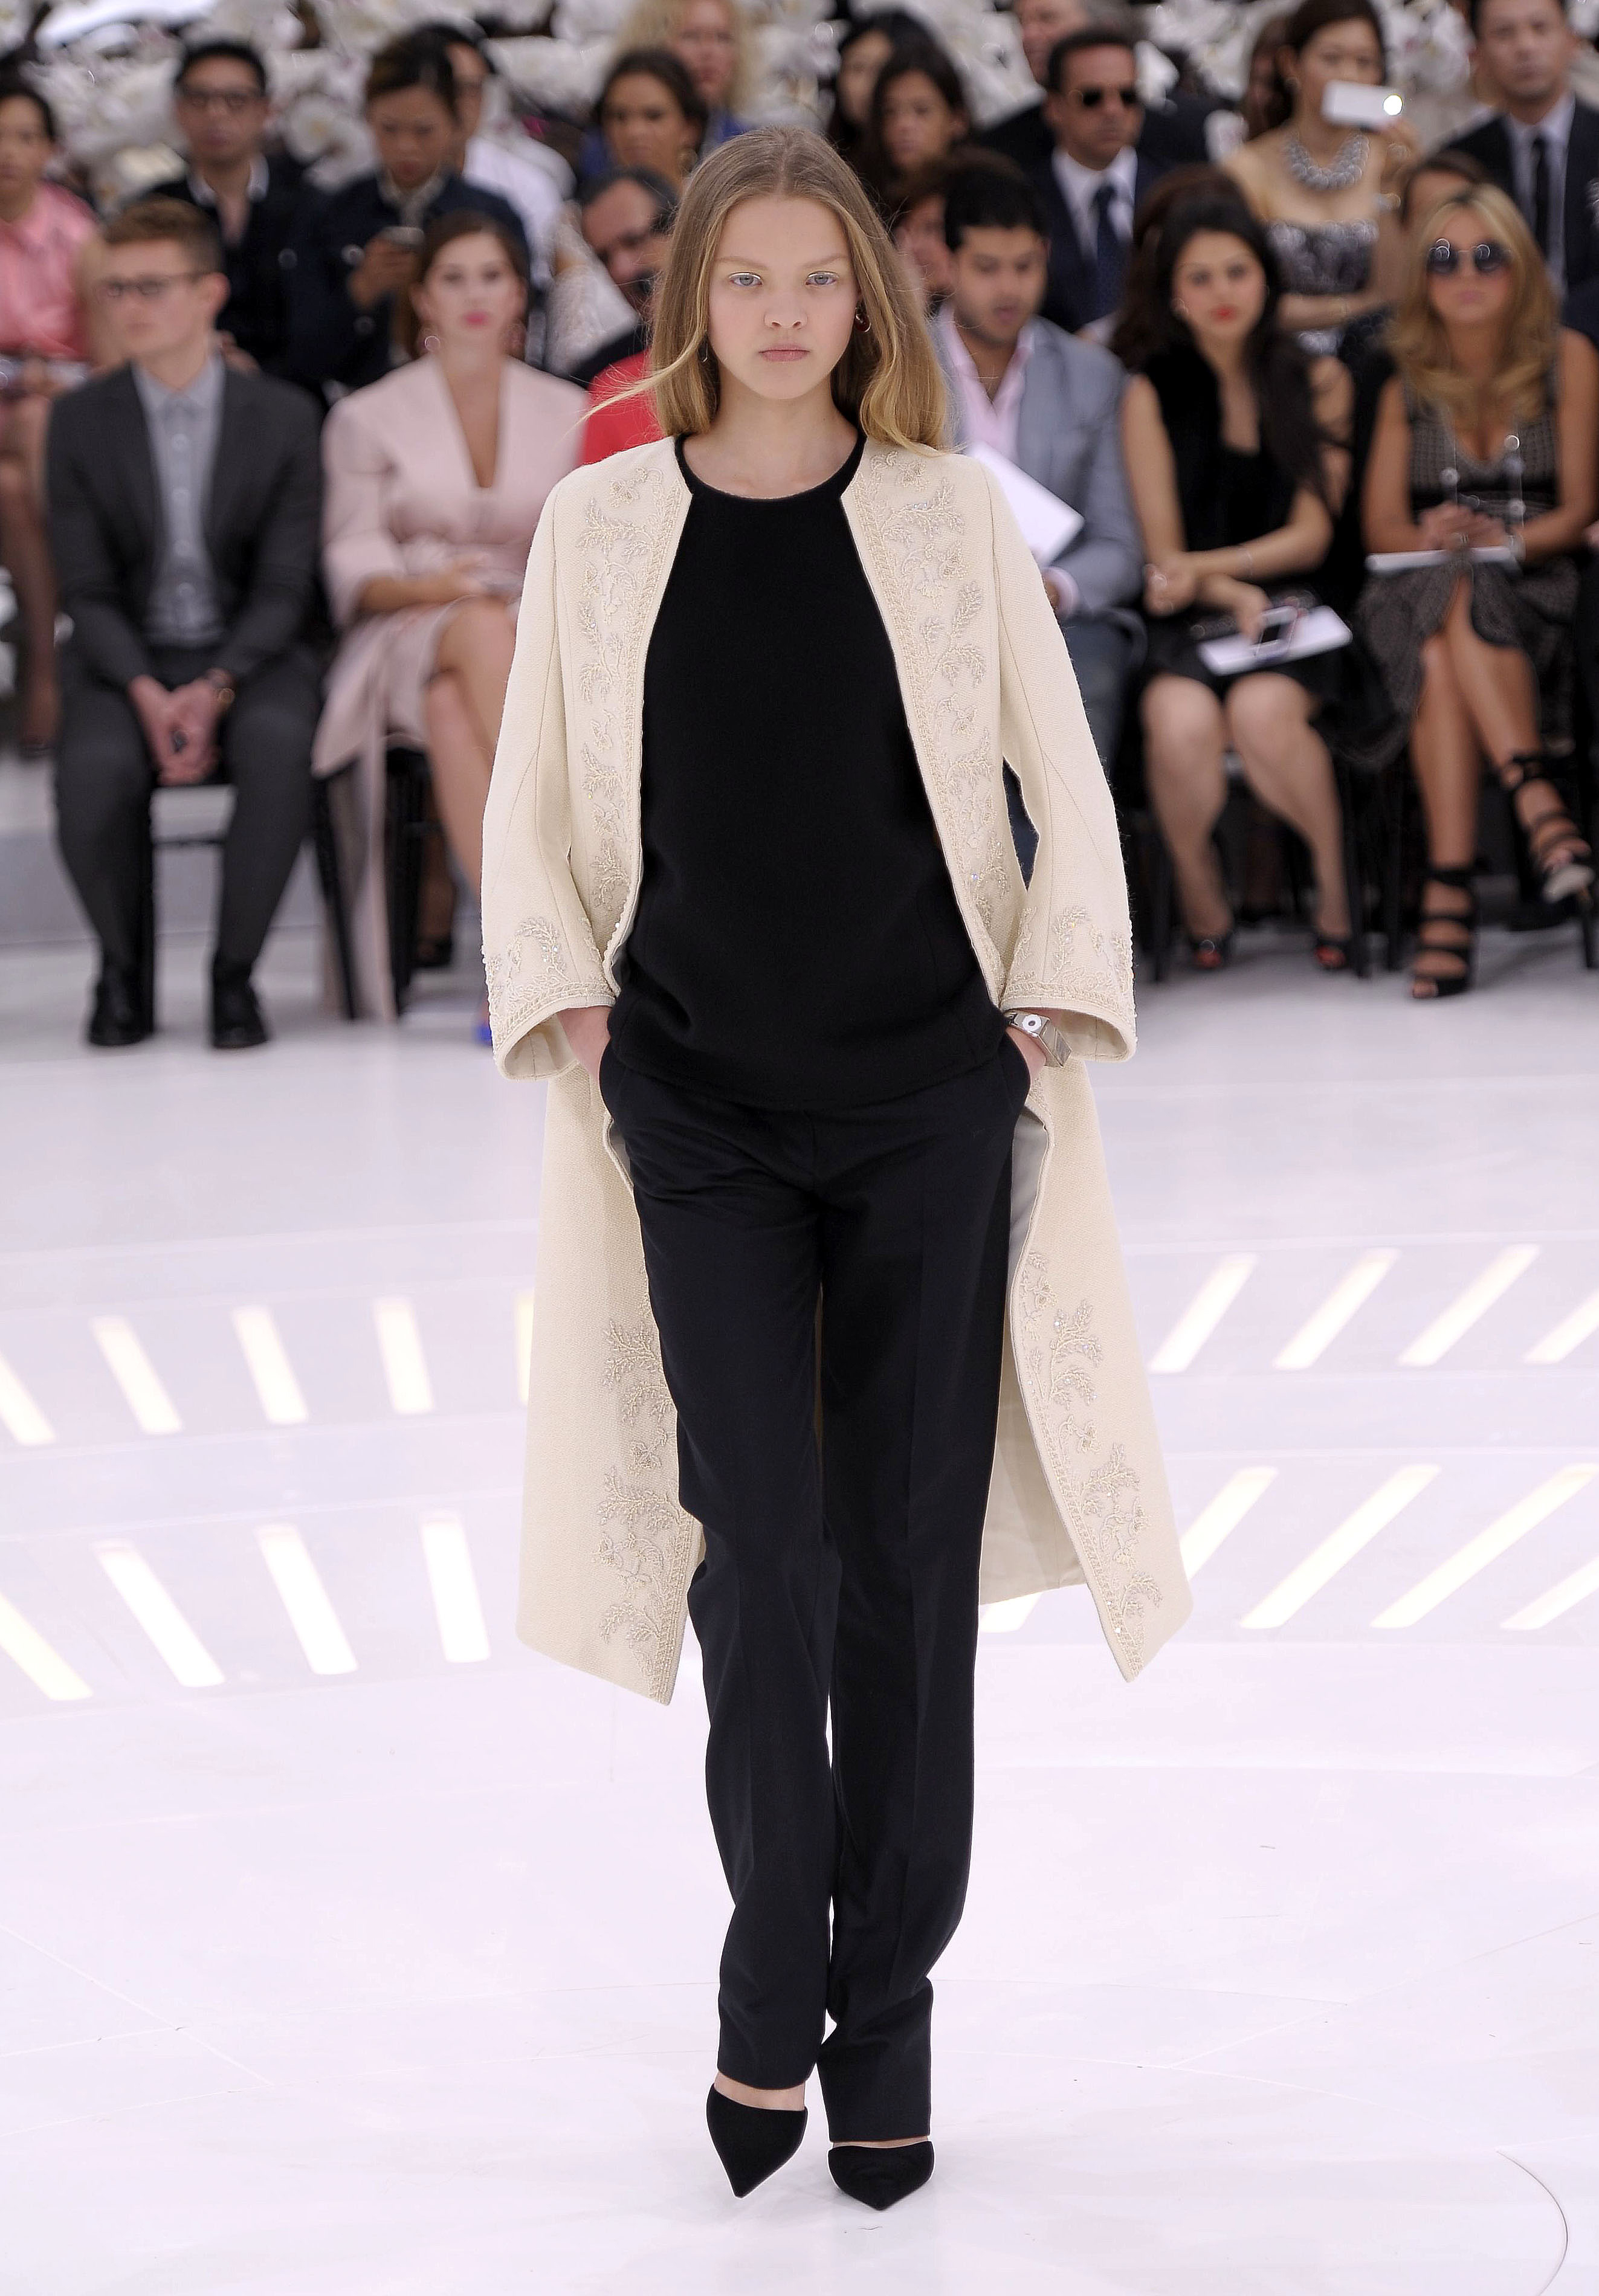 Christian Dior show, Haute Couture Fall Winter 2014, Paris Fashion Week, France - 07 Jul 2014